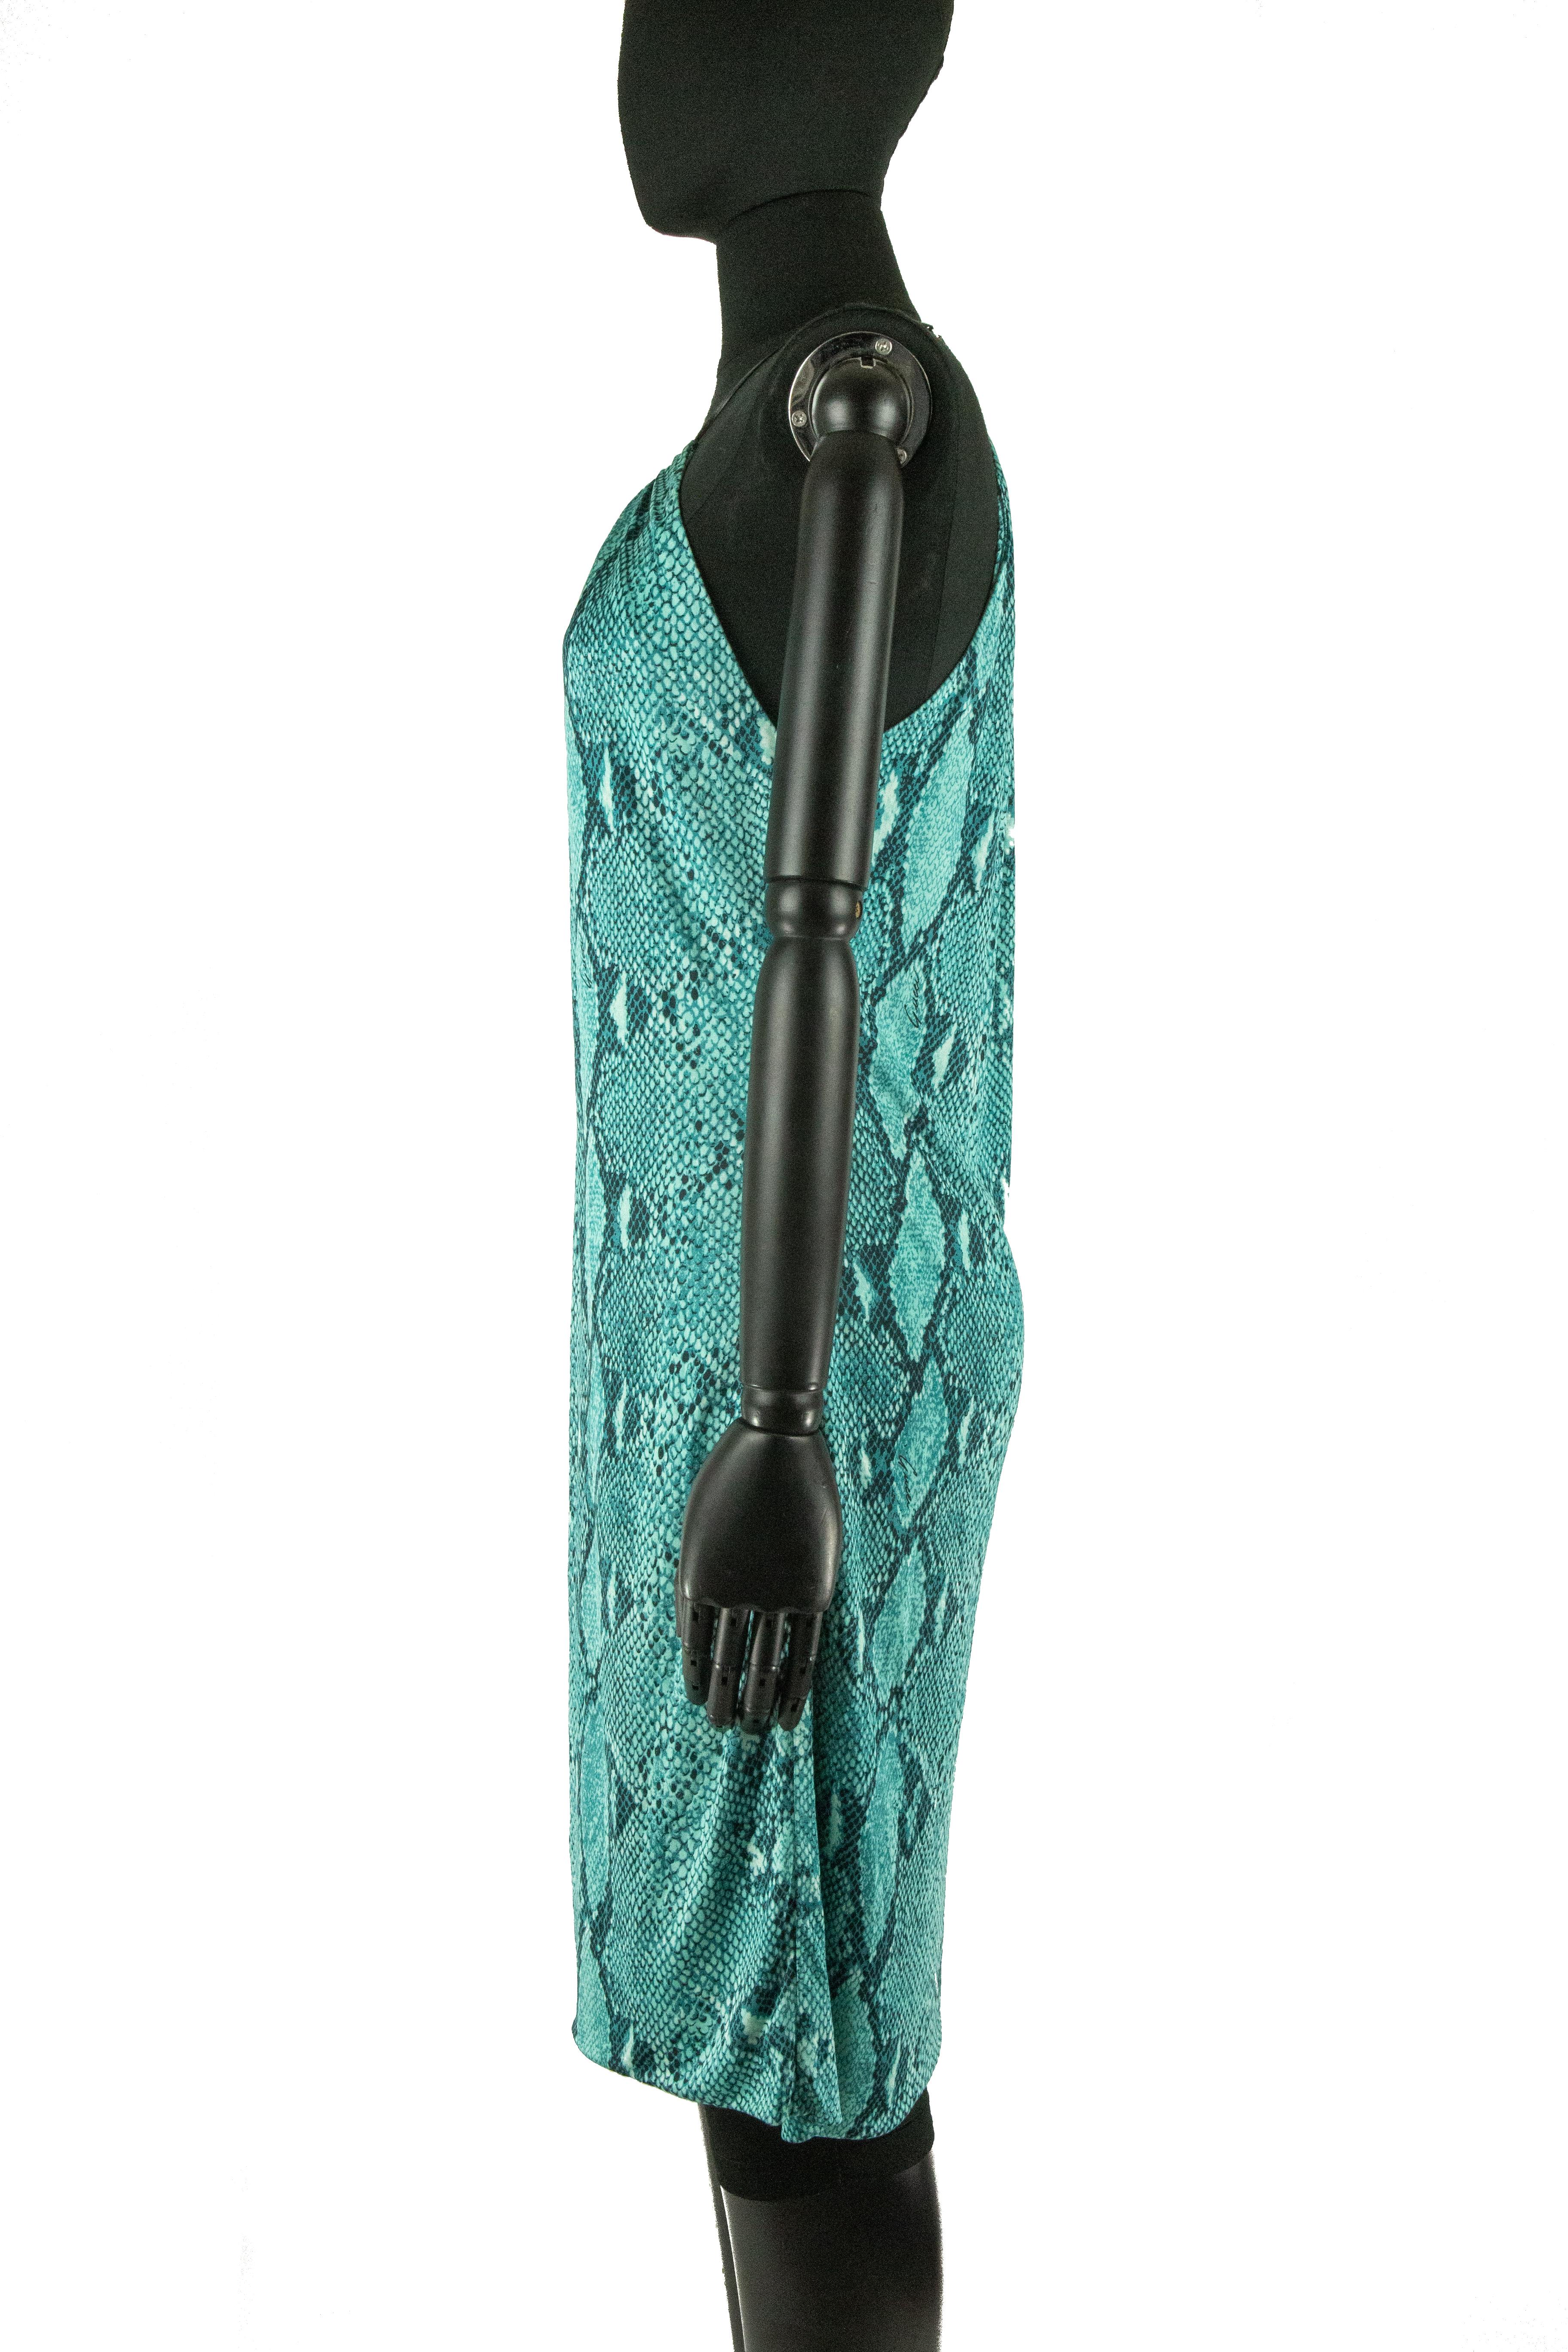 Ein Gucci by Tom Ford Jersey-Kleid für das Frühjahr 2000 mit einem All-Over-Schlangenhaut-Print mit dem Schriftzug des Hauses in Grün-, Türkis- und Schwarztönen, aufgehängt an einem feinen schwarzen Lederband, das einen Juwelenausschnitt bildet,